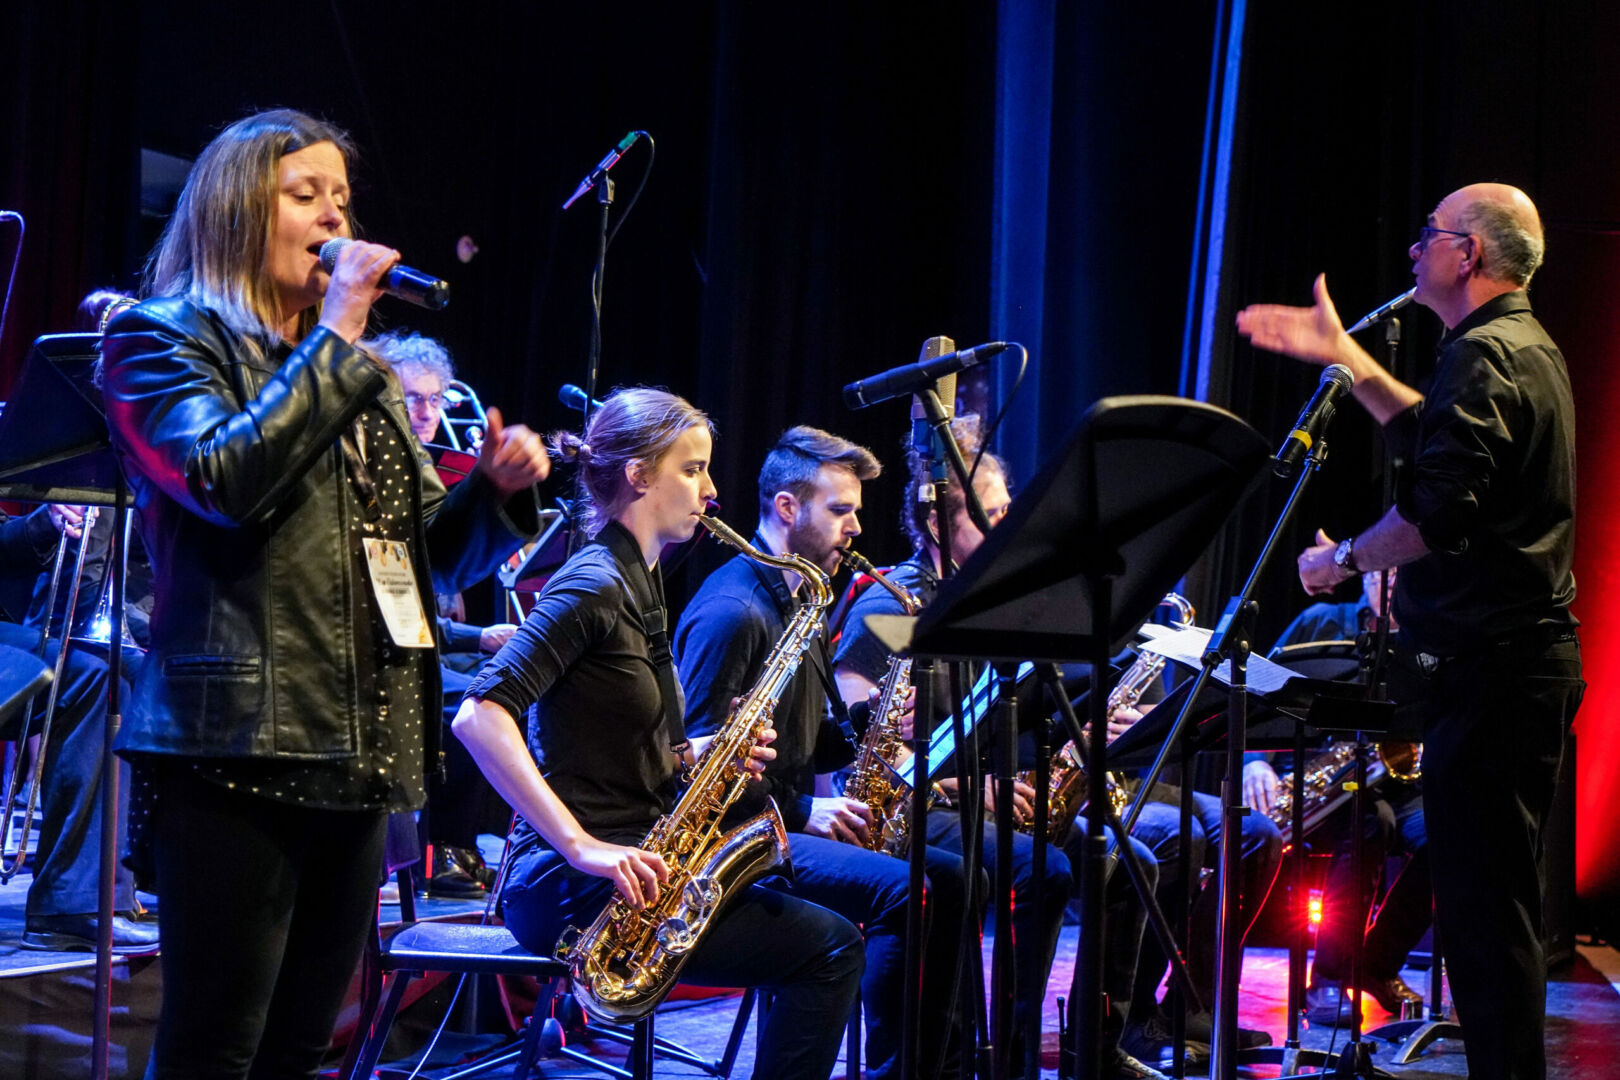 La chanteuse Julie Goupil a accompagné le Jazz Band. Photo François Larivière | Le Courrier ©